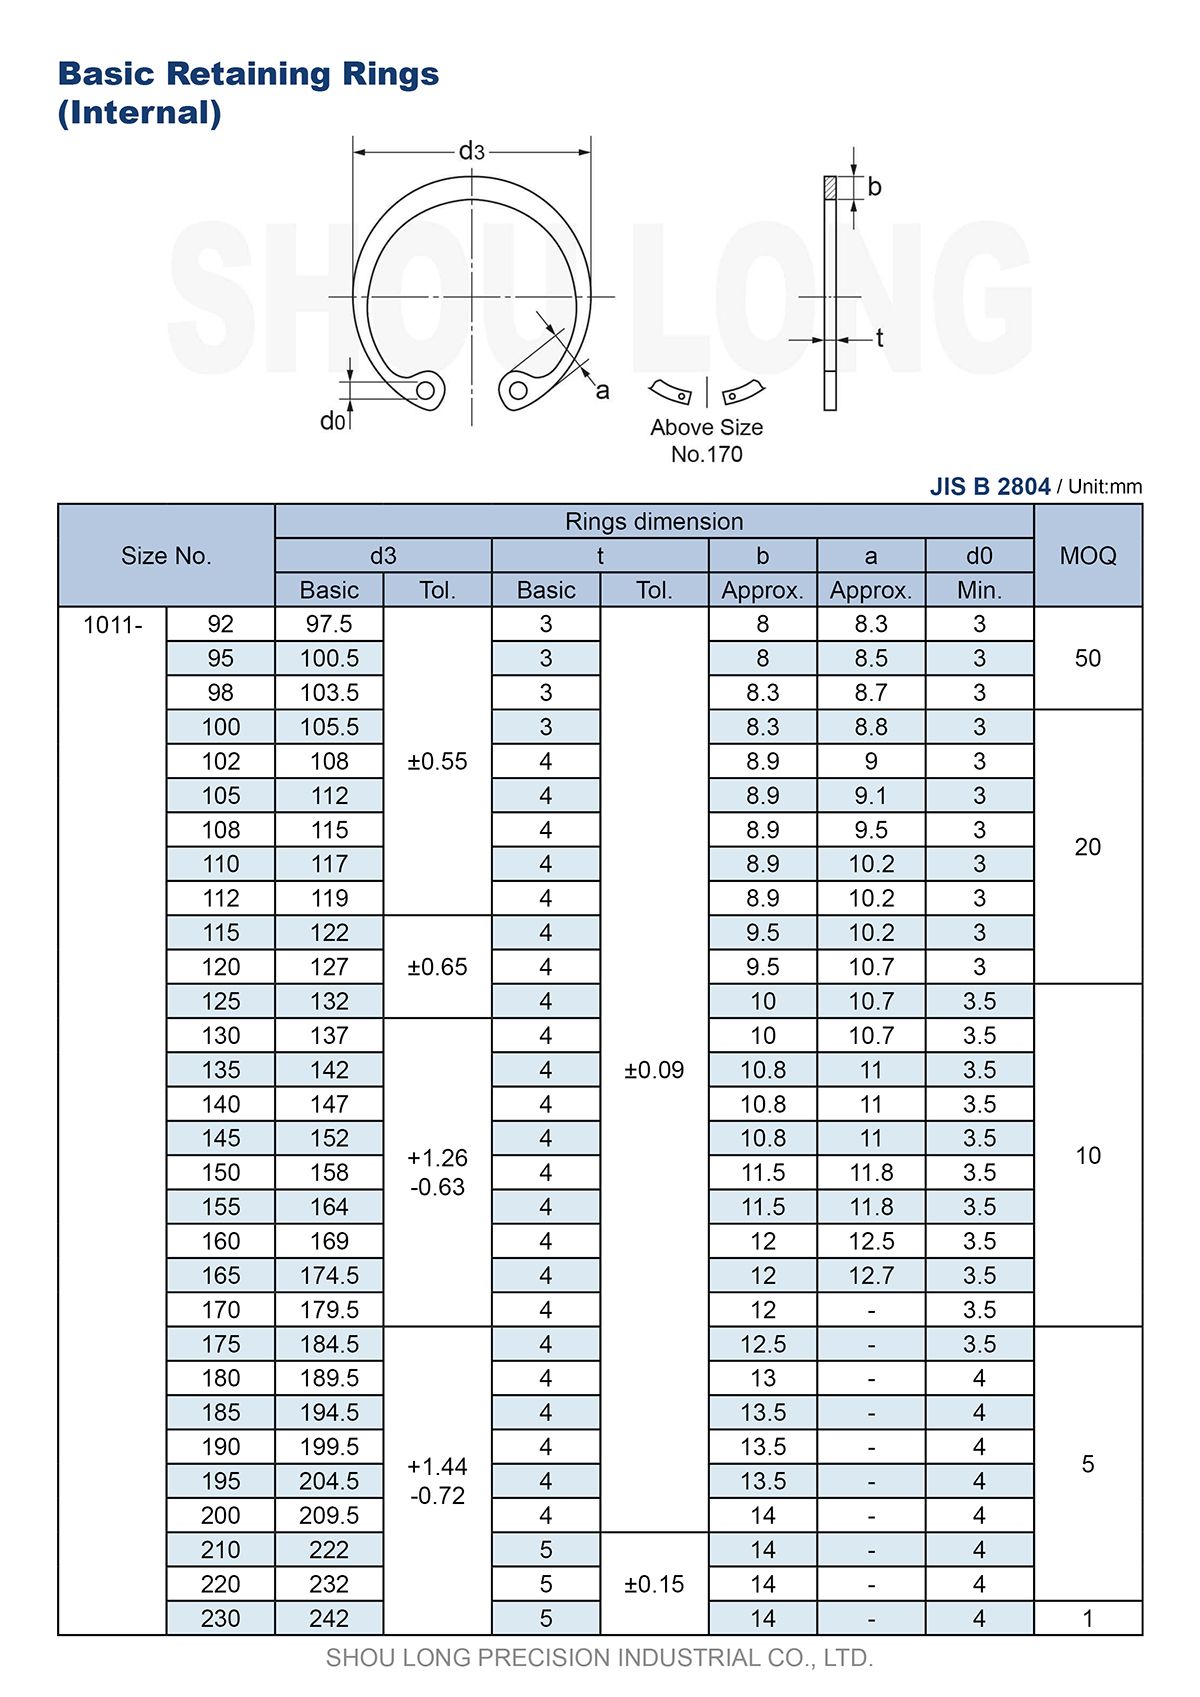 Especificação dos Anéis de Retenção Básicos Métricos JIS para Furos B2804-3